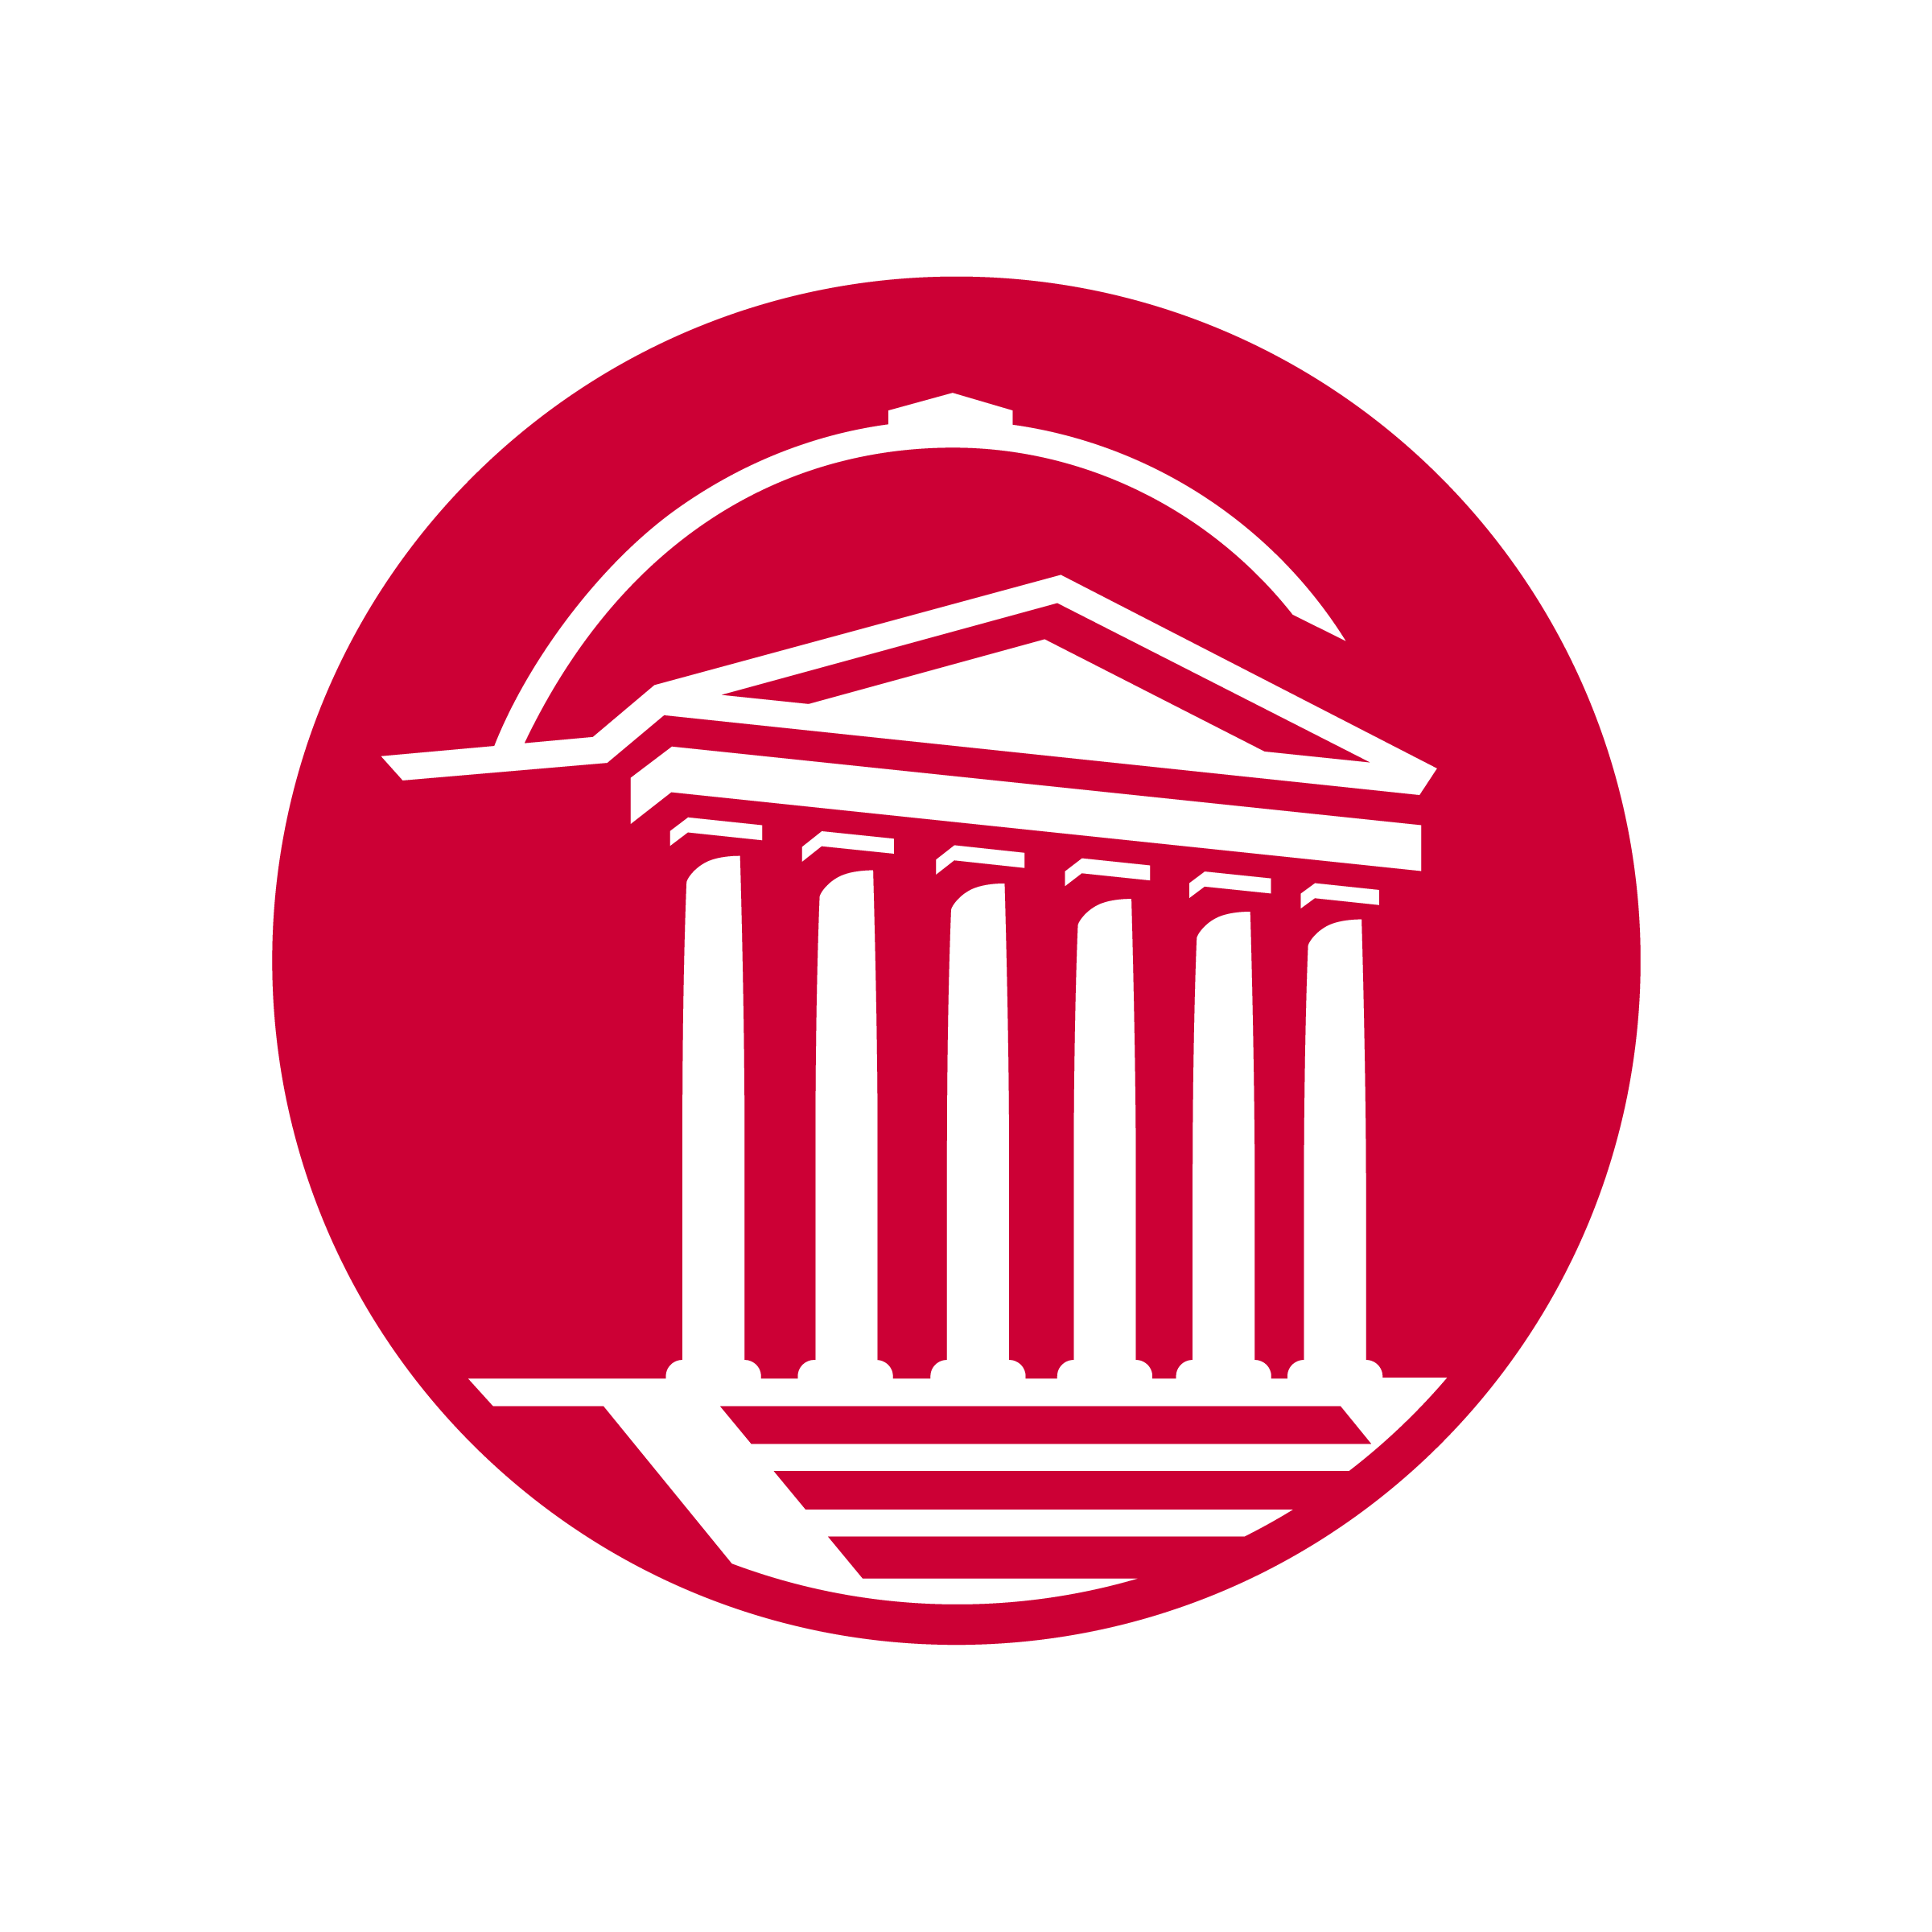 Cain logo